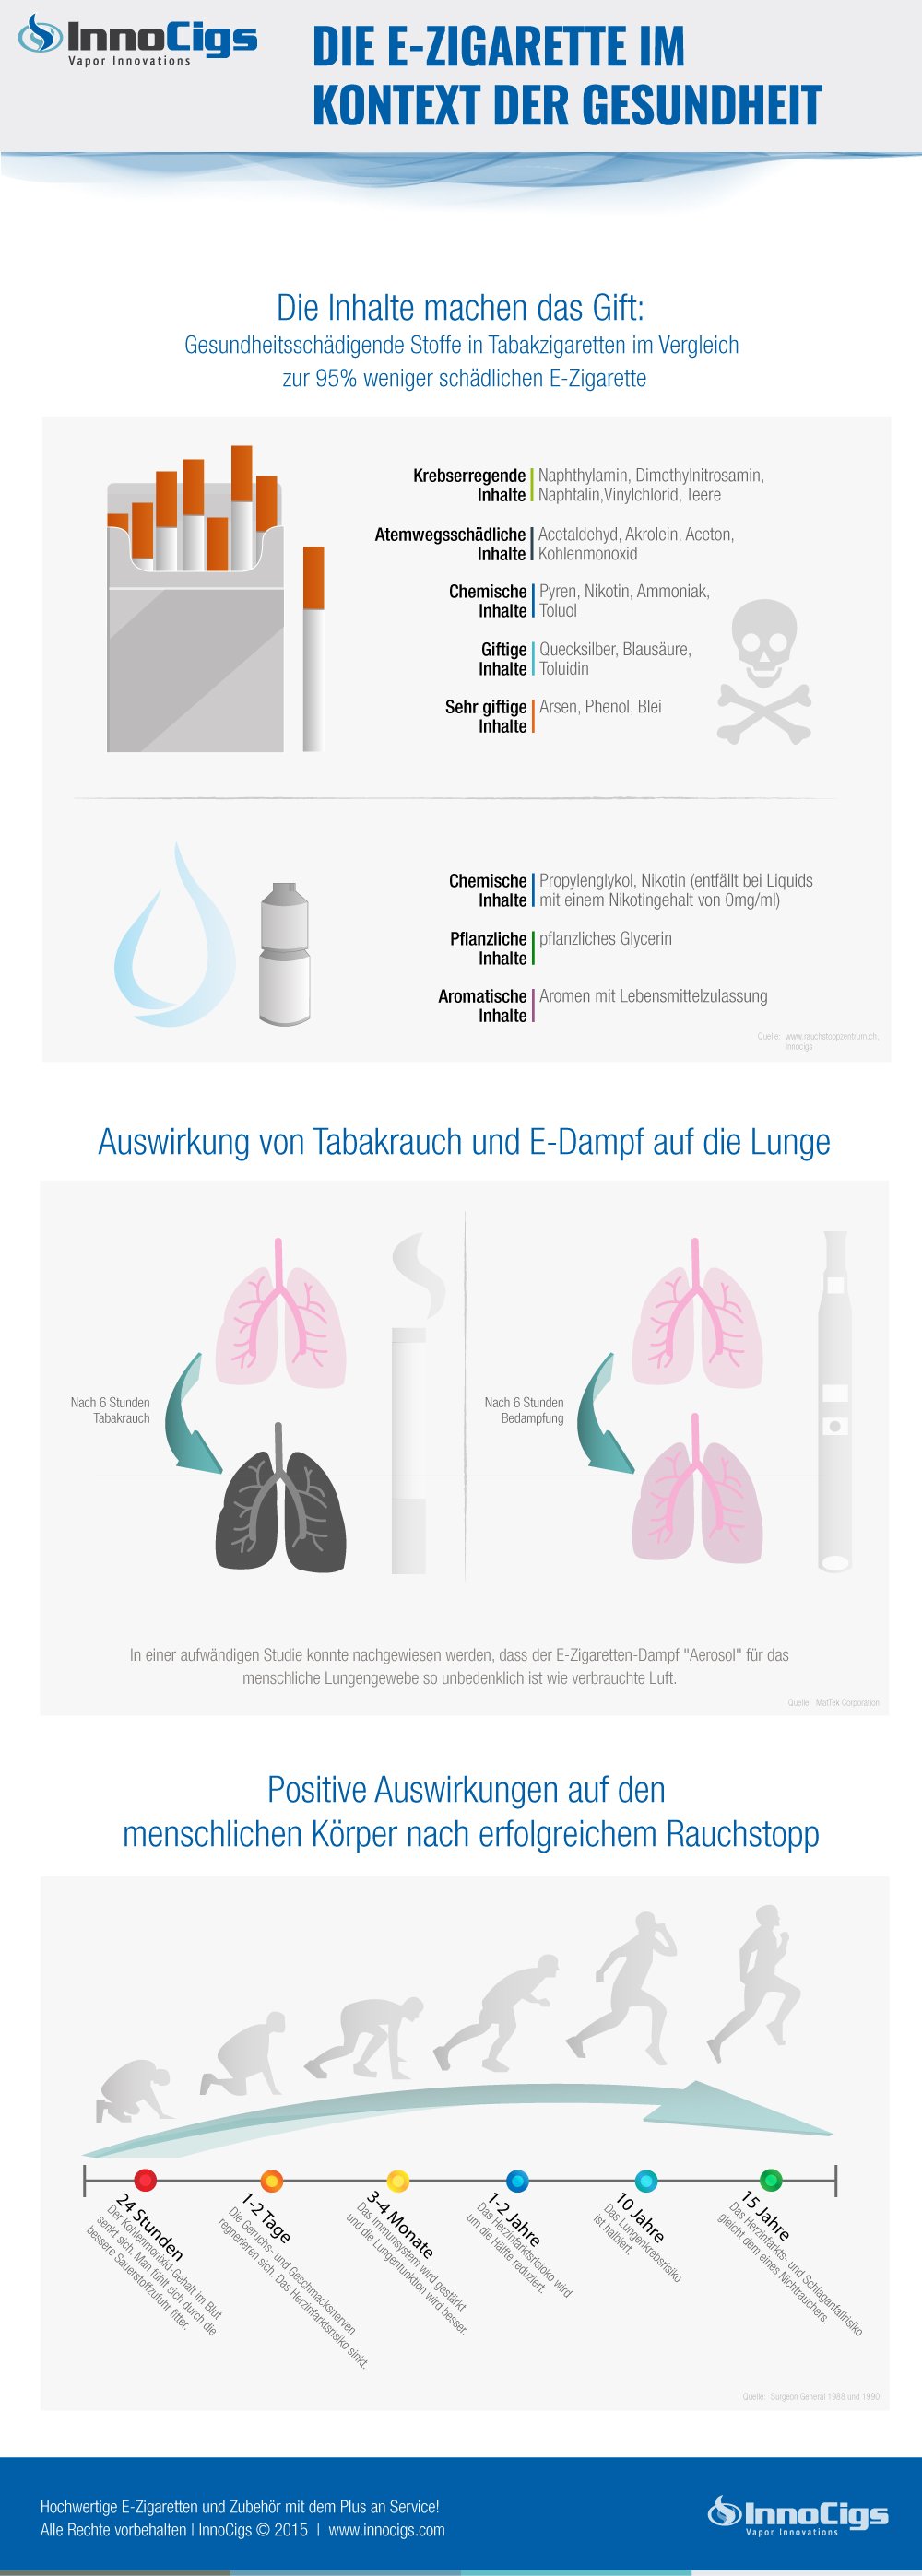 Ausführliche Infografik zu E-Zigaretten und Gesundheit